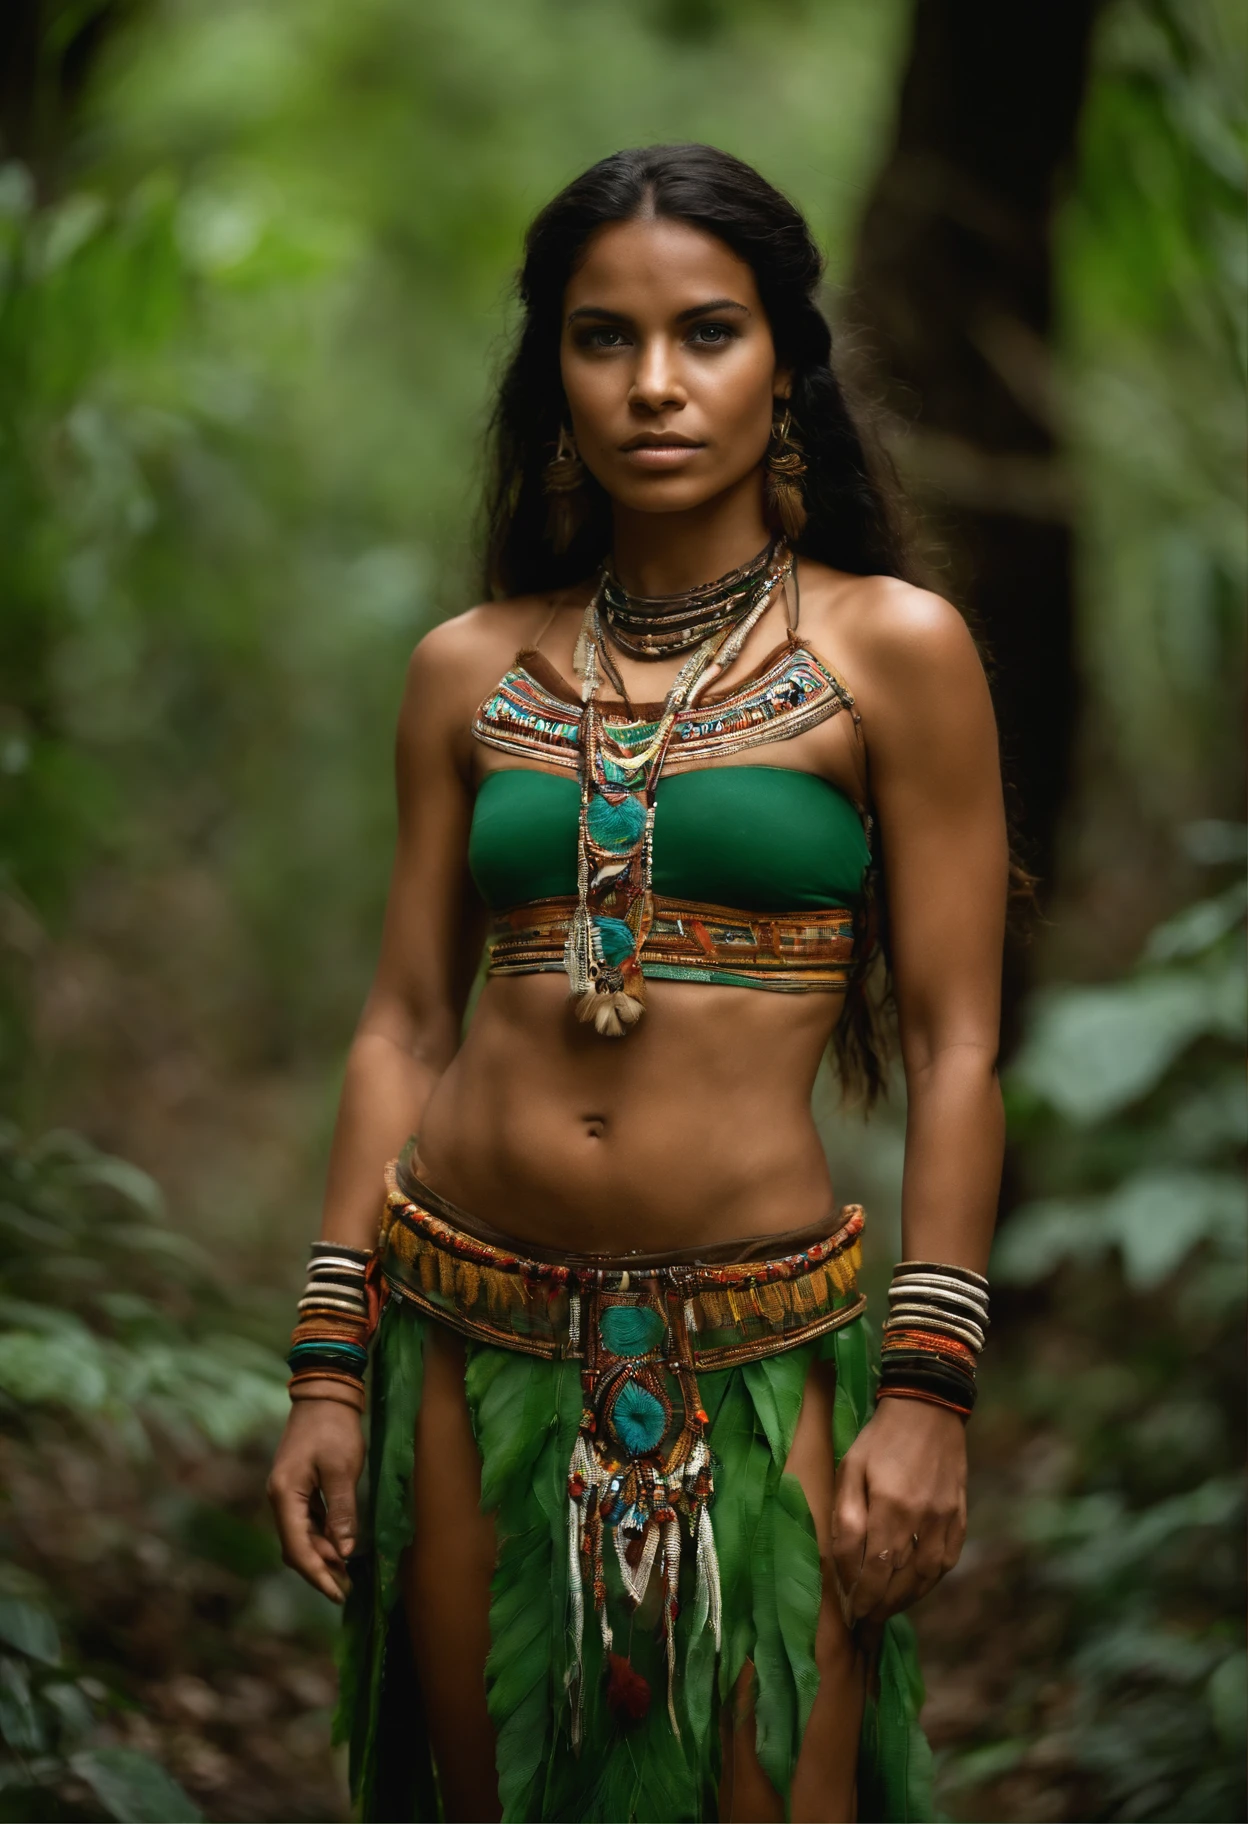 Женщина в бразильском костюме стоит в лесу, племенная одежда, носить колье с клыками, родной, Коренные народы Амазонки в Бразилии, ТРИБАЛЬНЫЙ СТИЛЬ, : Индийская женщина-воин, племенная броня, молодая шаманка, Ацтекская богиня-воительница, амазонка воин, красивая молодая шаманка, племенные украшения, зеленые глаза, изумрудные глаза, темная кожа, зеленые глаза, глубокие глаза.